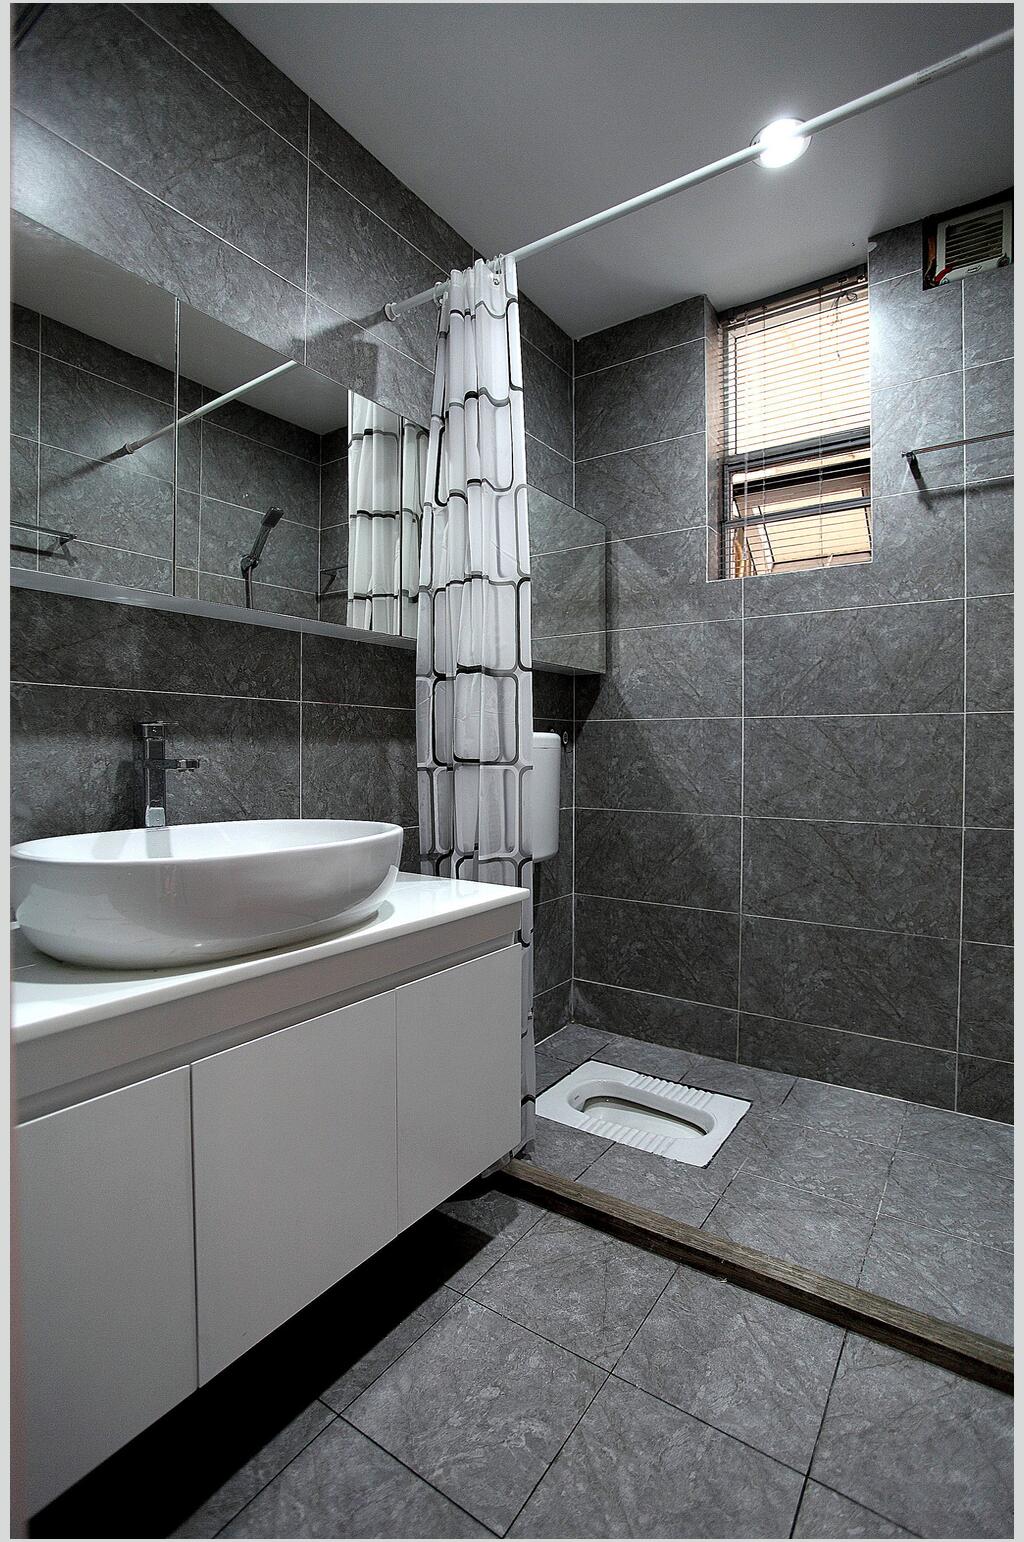 灰色厕所北欧风格室内图片